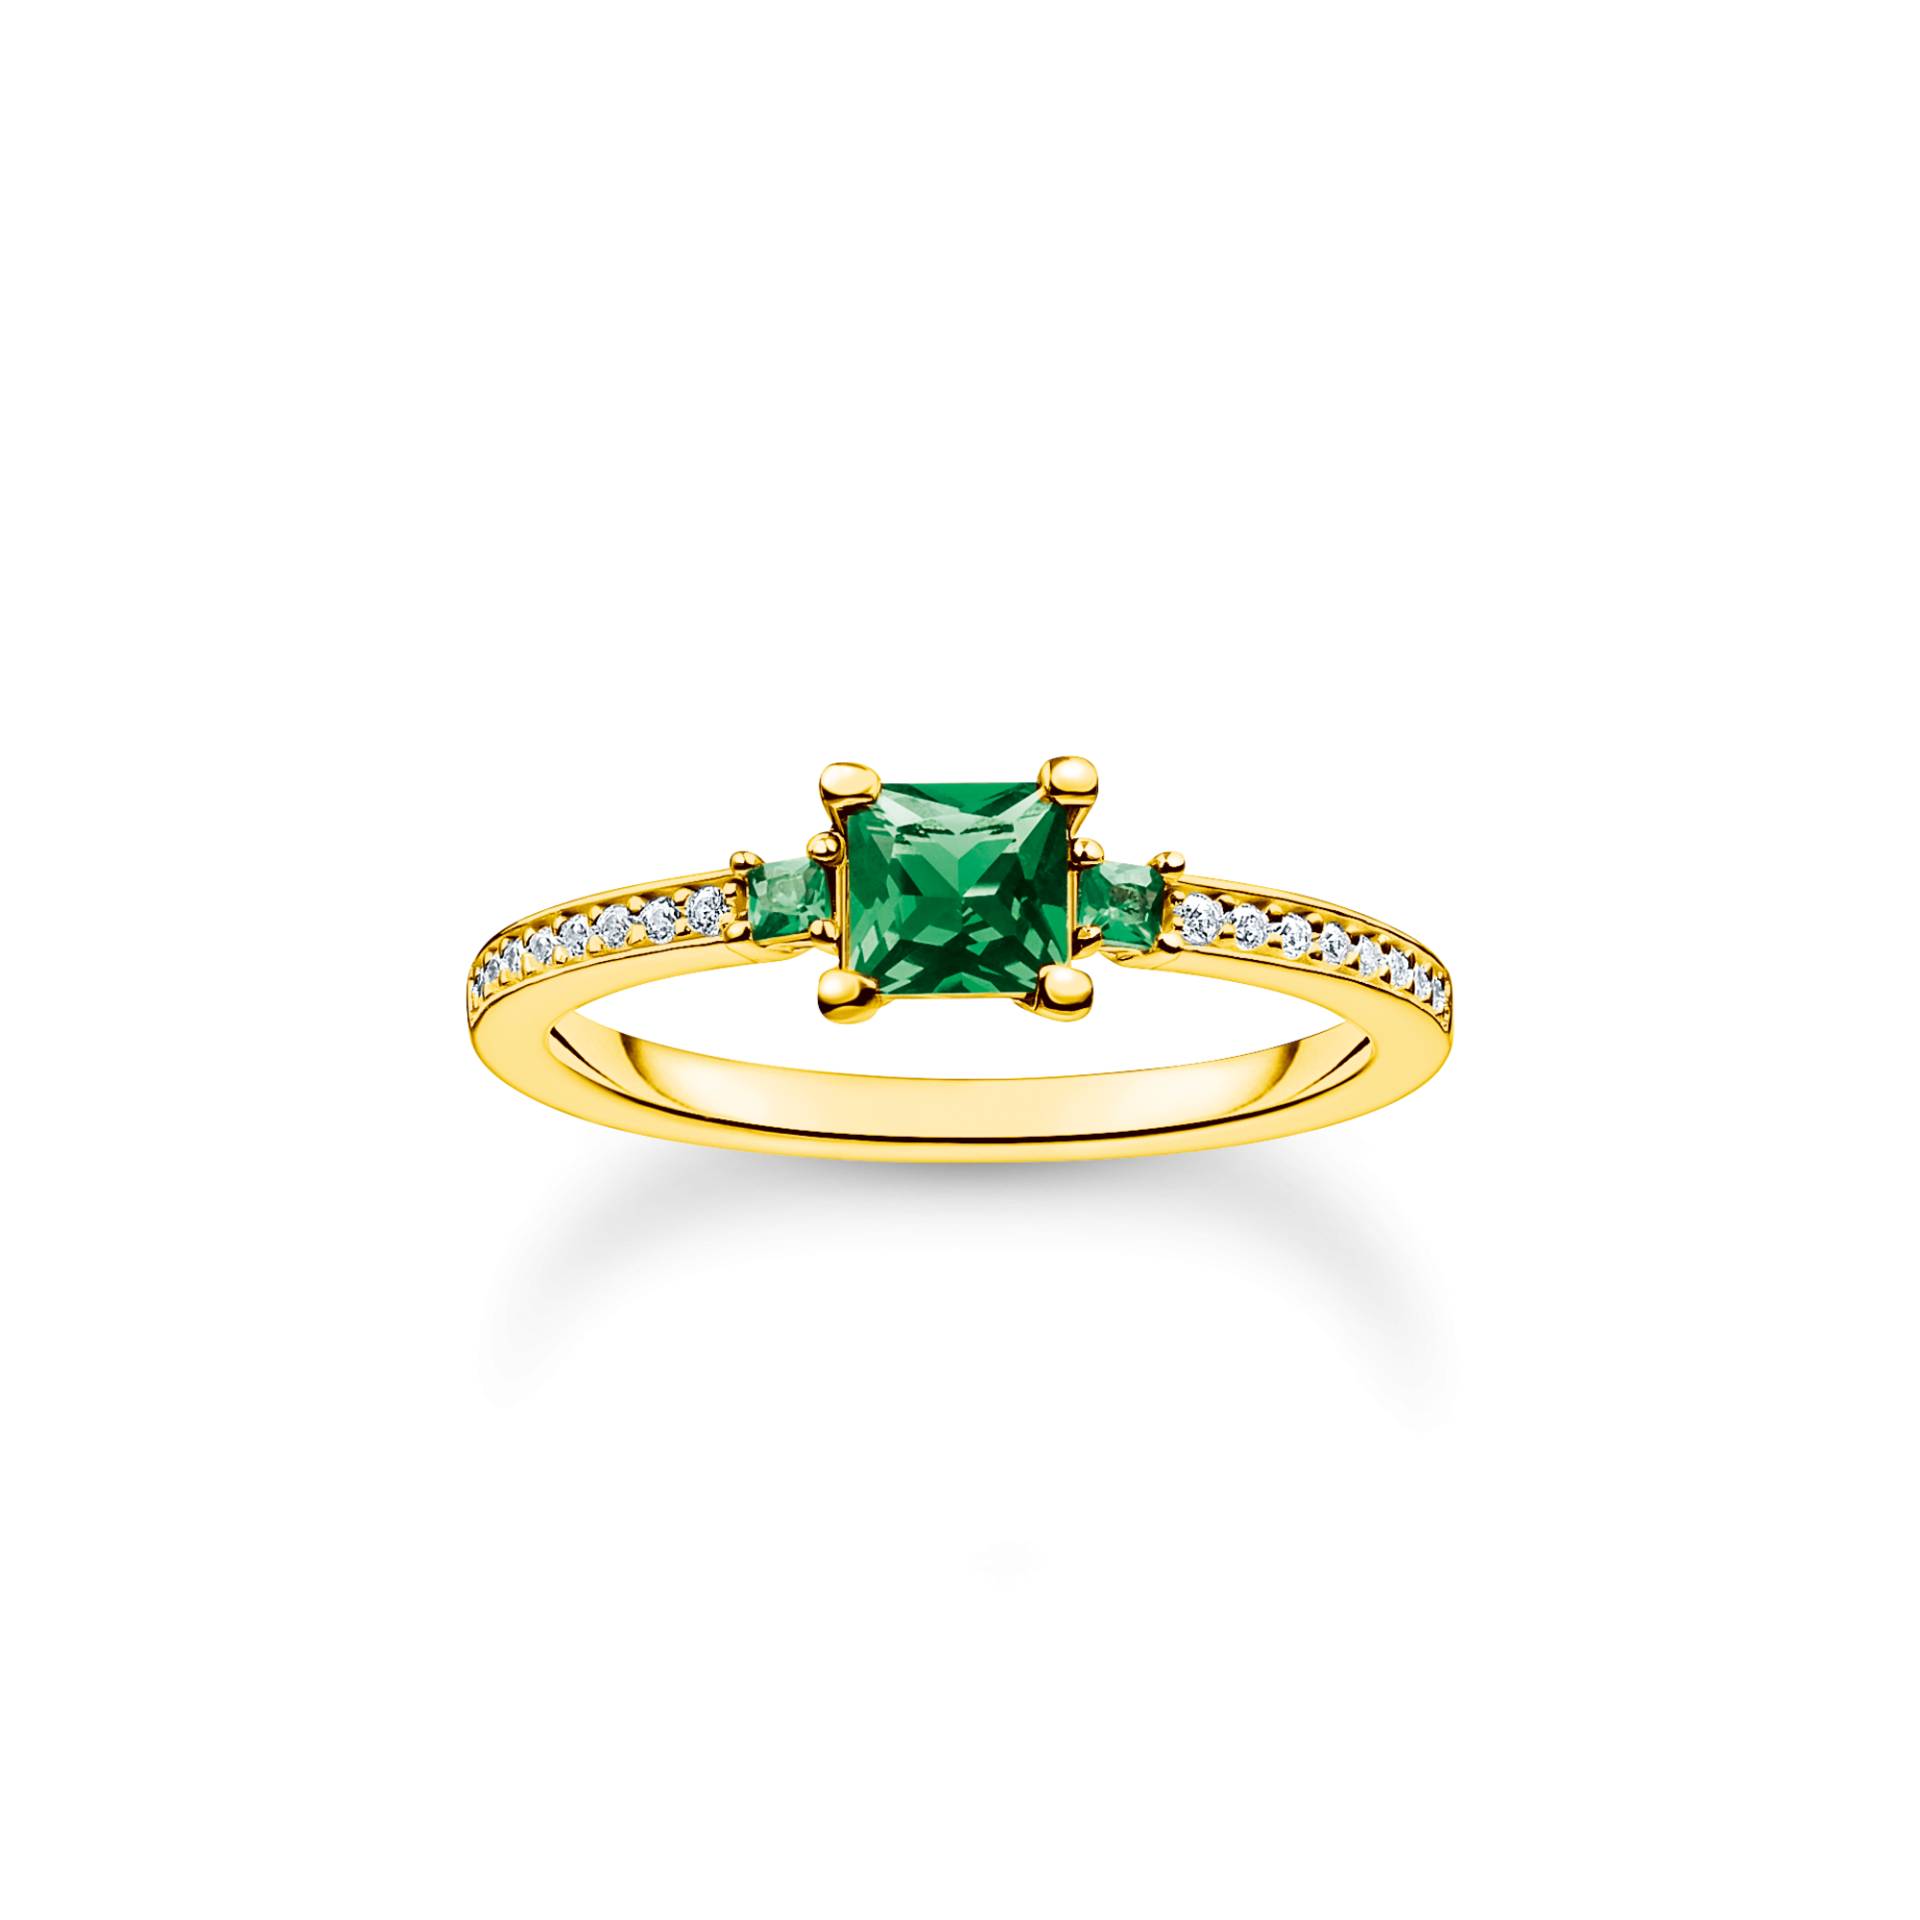 Thomas Sabo Ring mit grünen und weißen Steinen gold grün TR2402-971-6-52 von Thomas Sabo